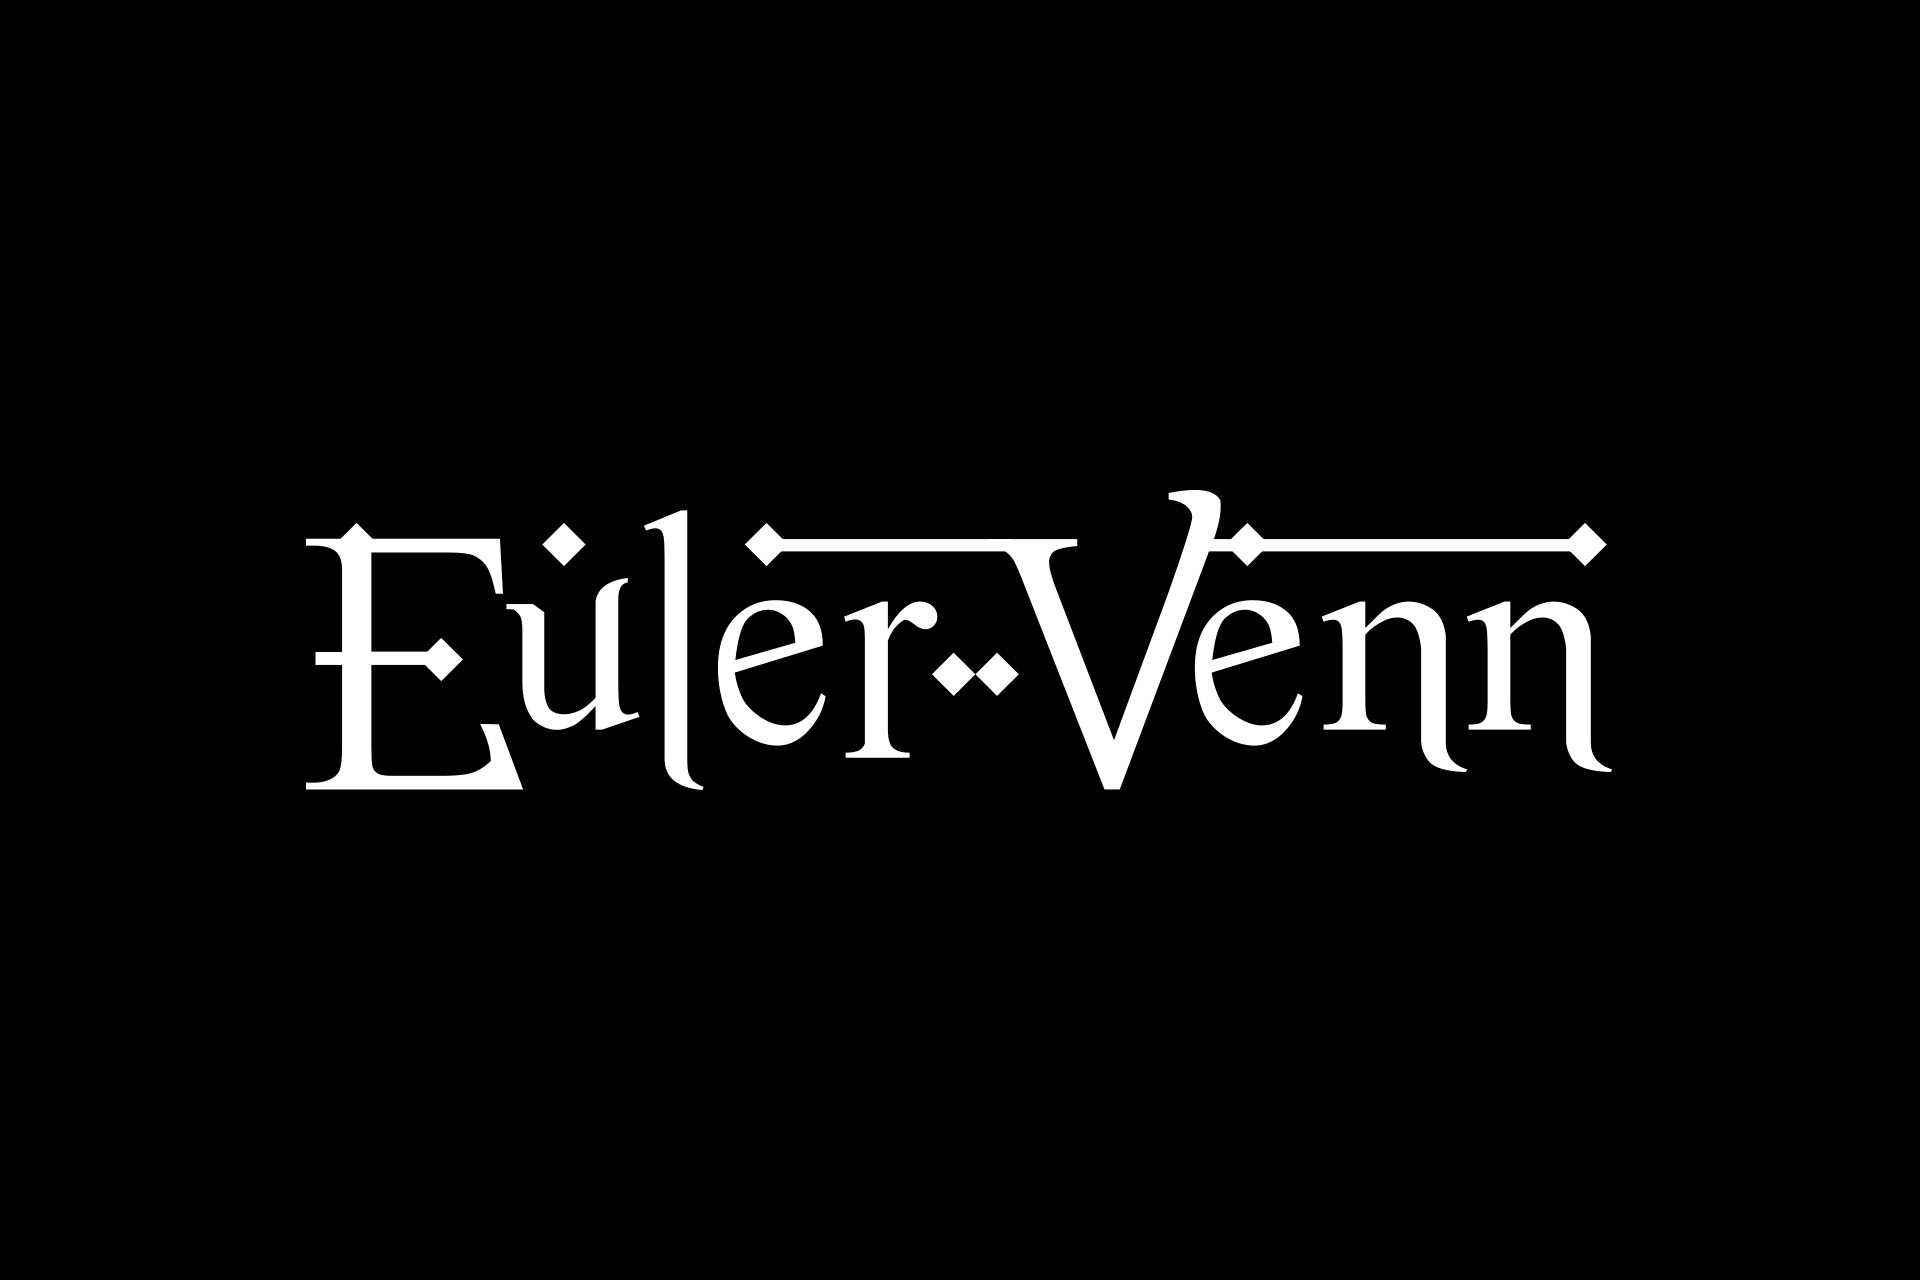 Euler Venn logo